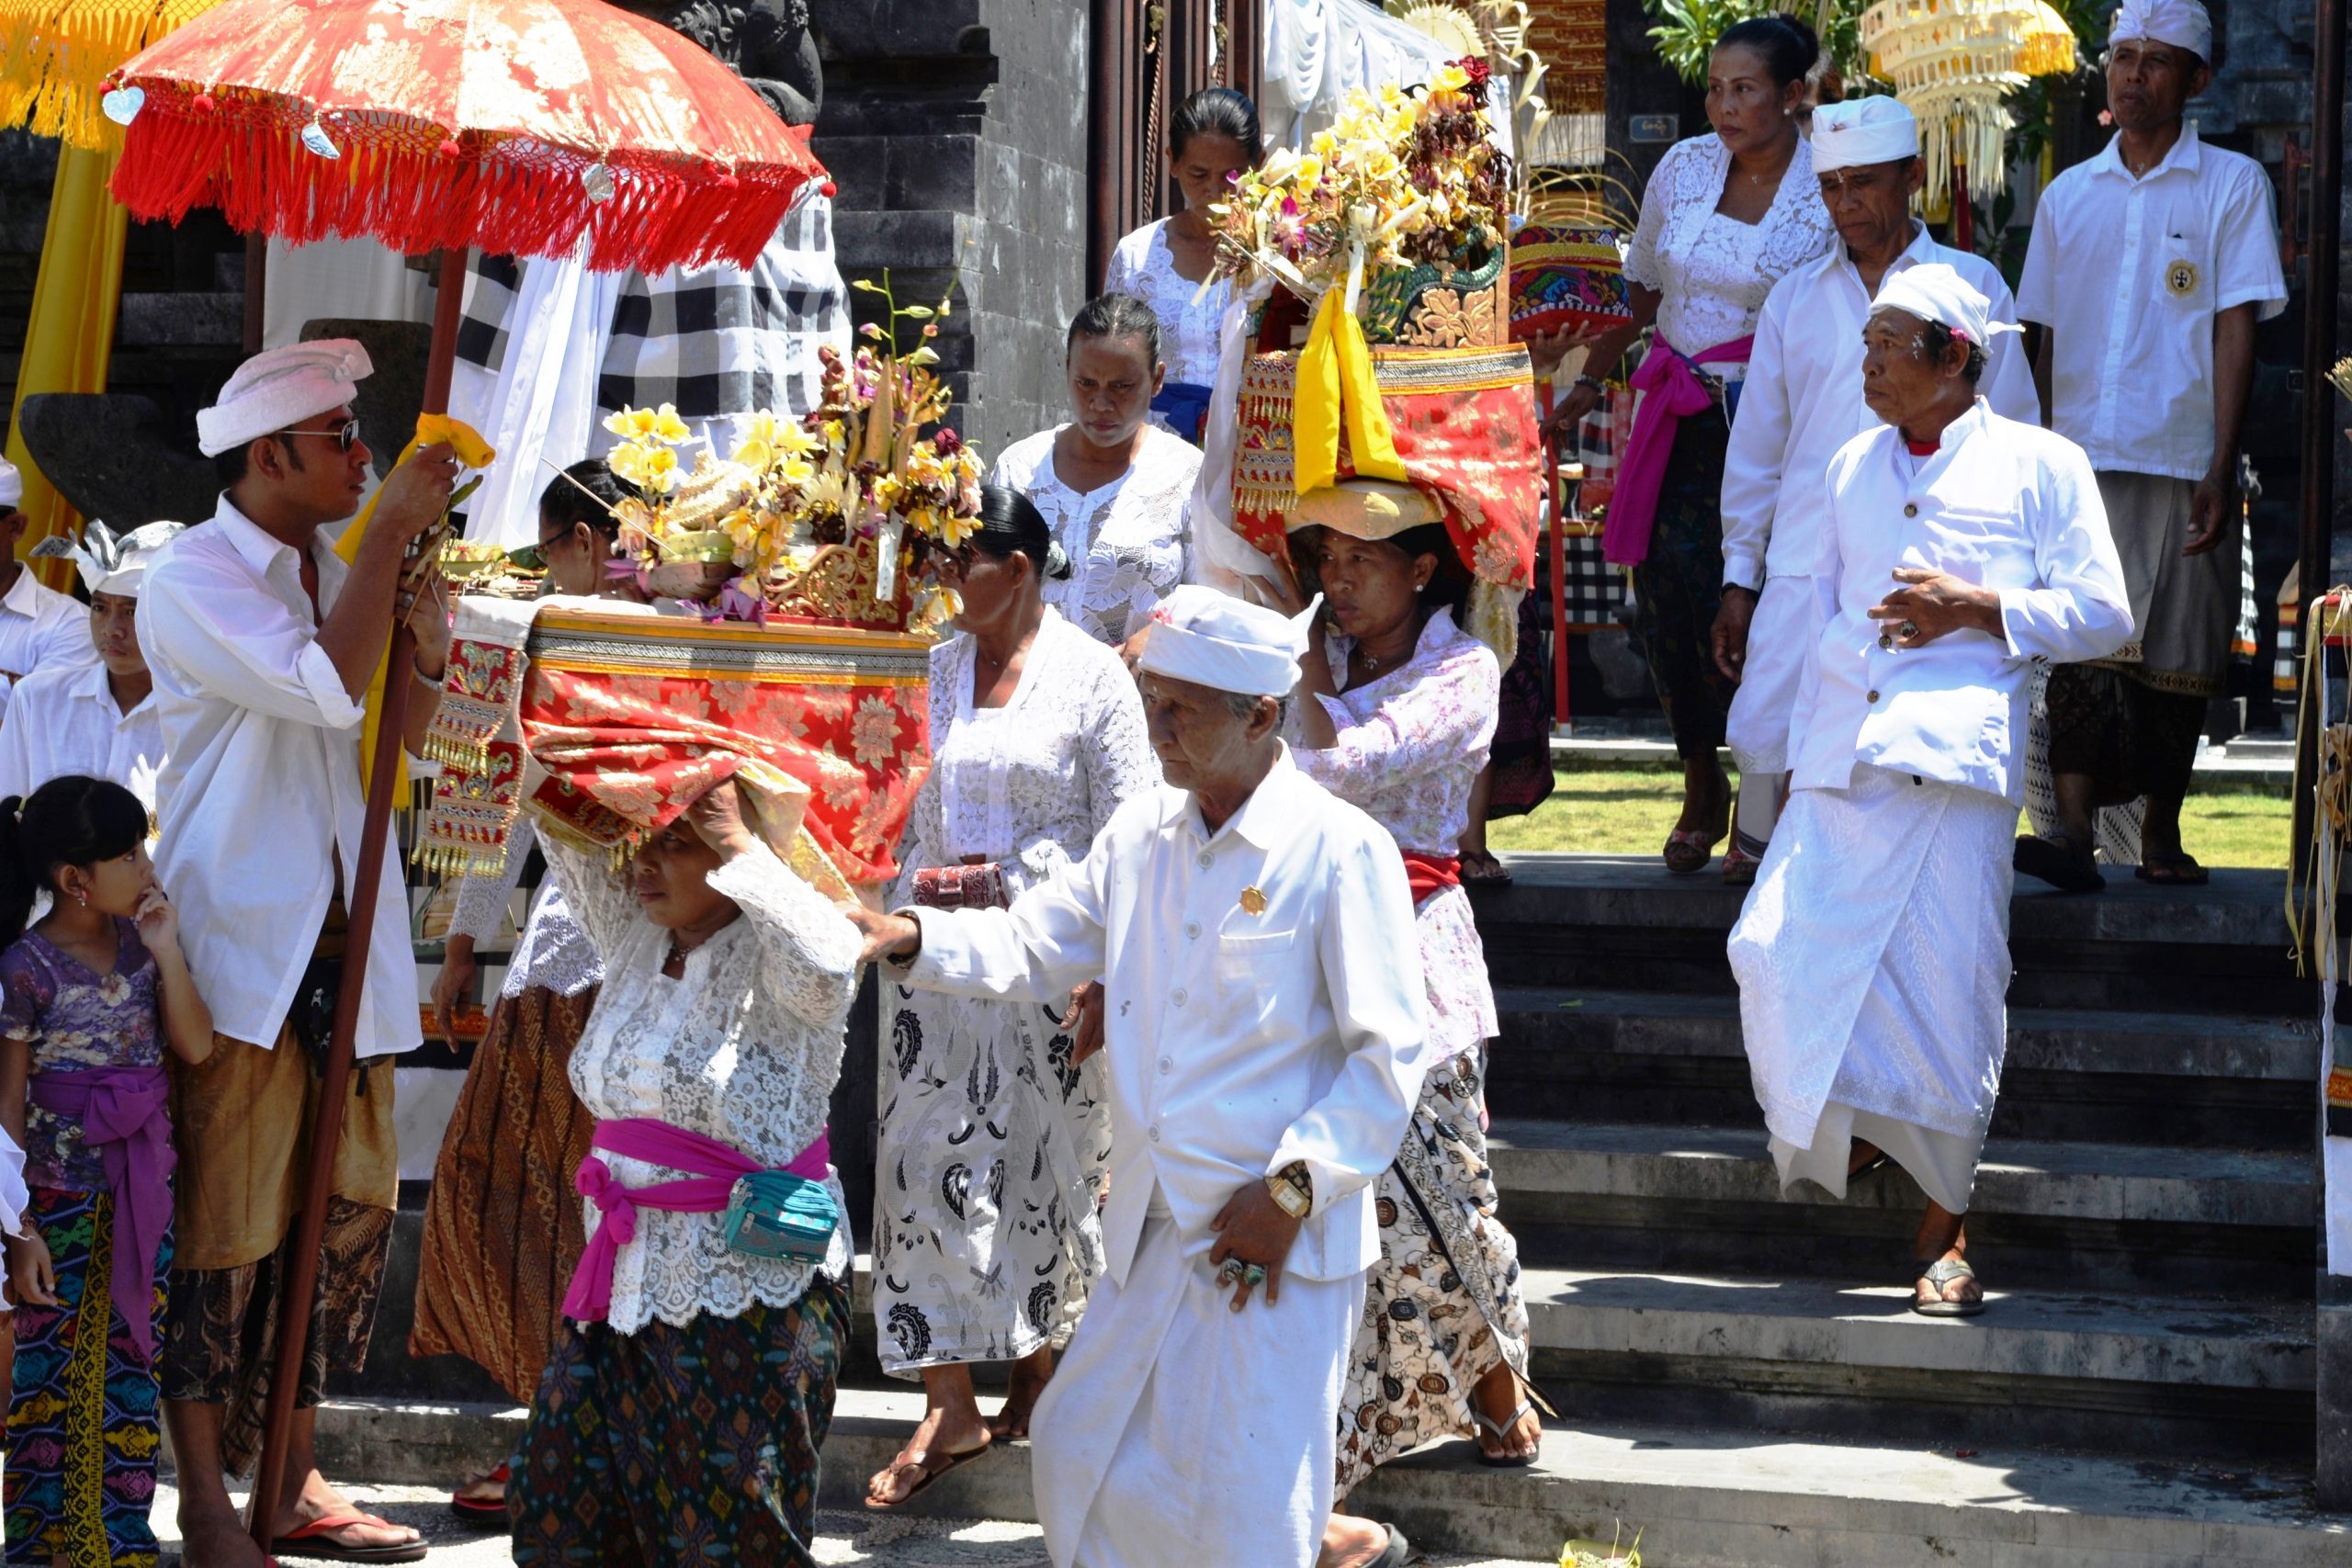 Ein Umzug am Vortag zum Balinesischen Neujahr – dem Tag der Stille.